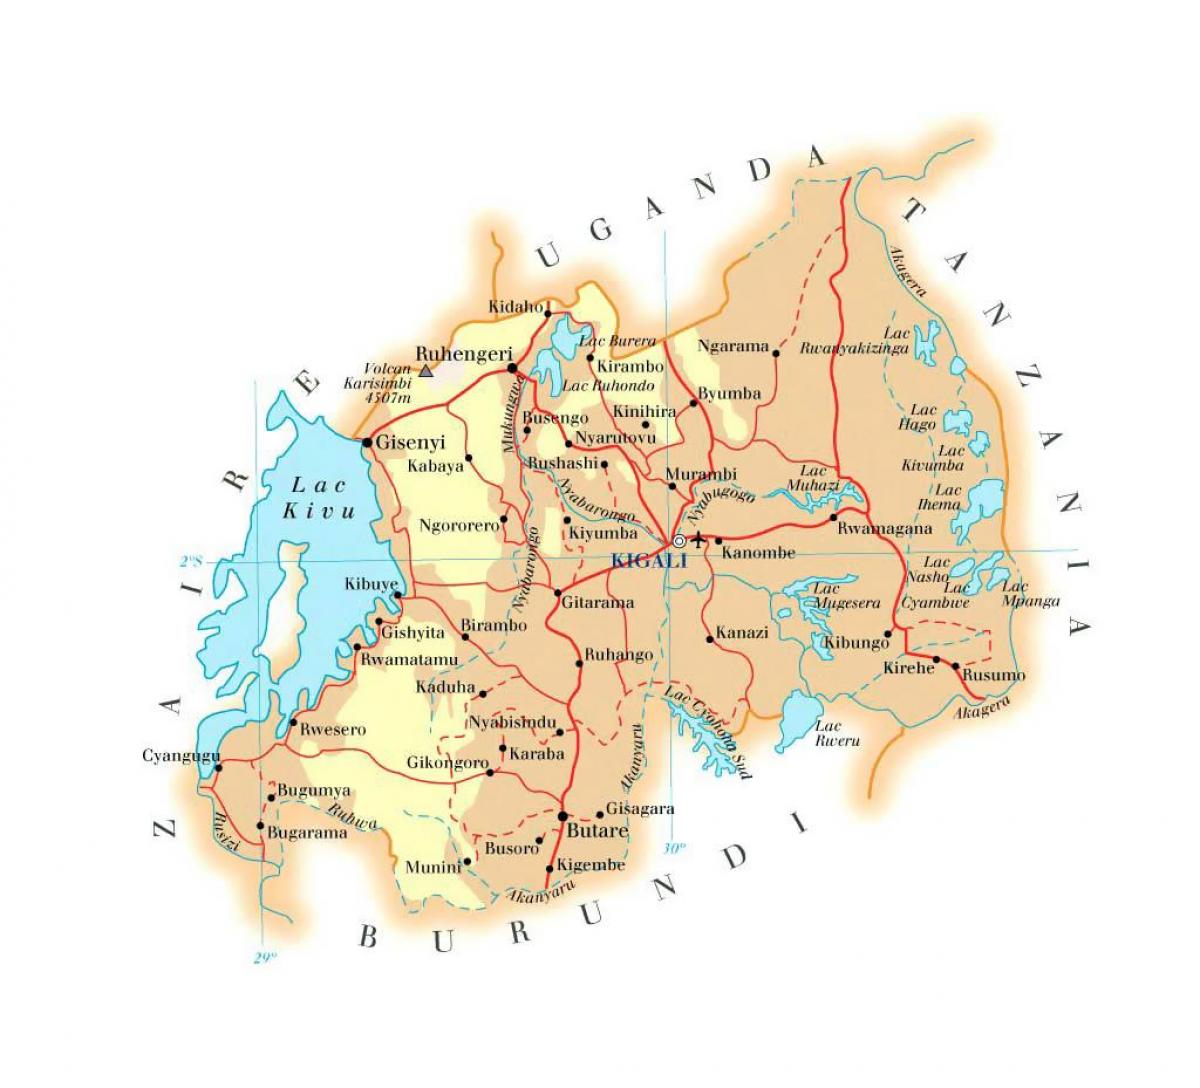 kort over Rwanda vej